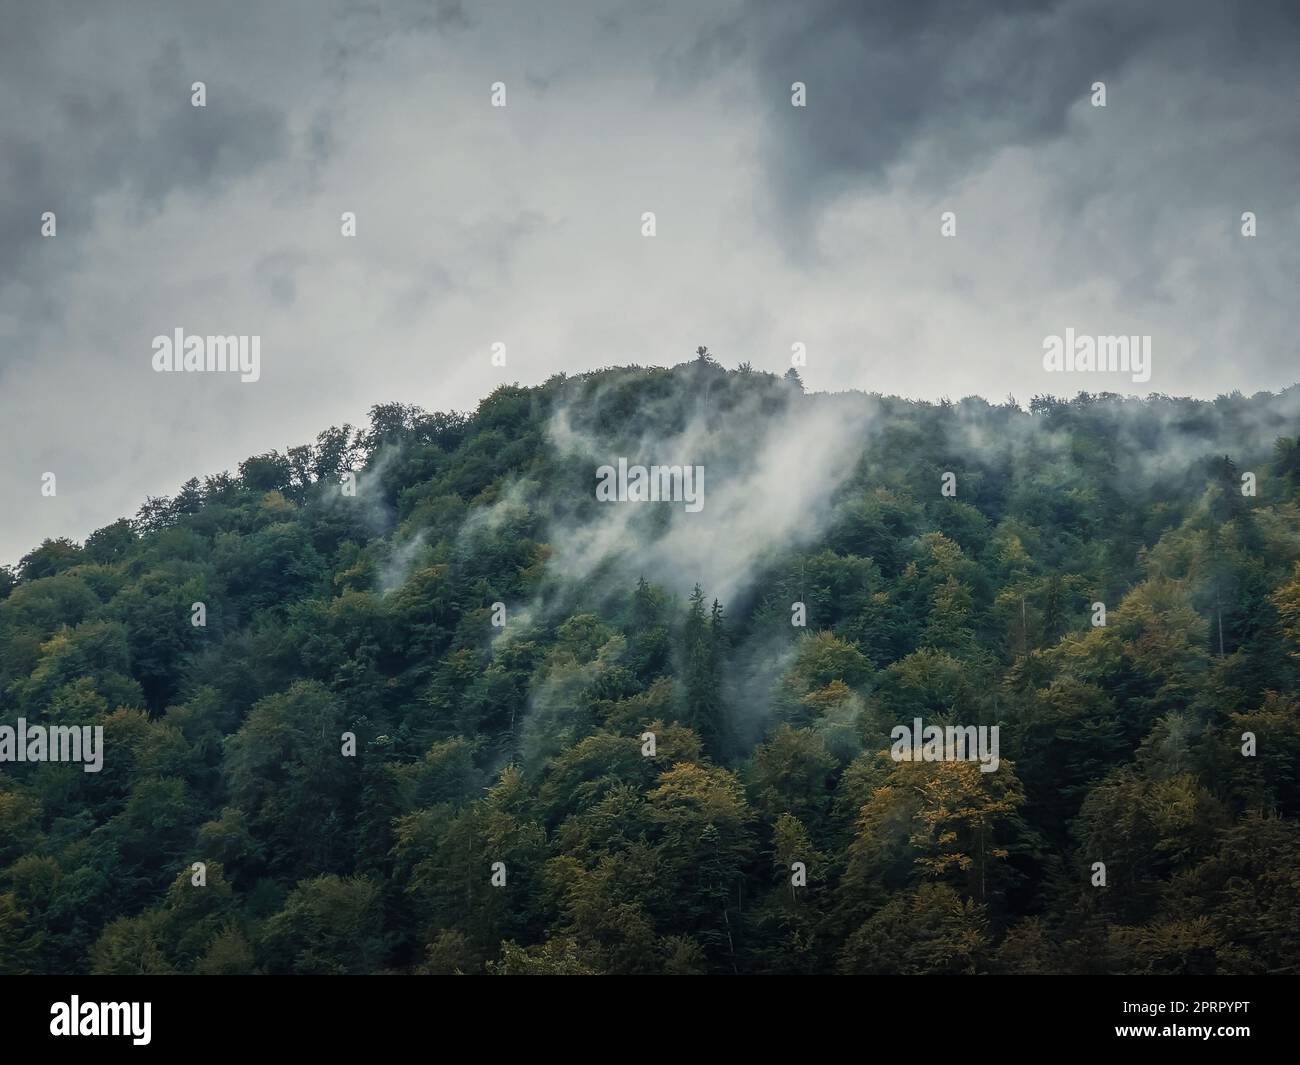 Friedliche Herbstszene mit nebligen Wolken, die sich an einem düsteren Tag durch den gemischten Wald auf einem Hügel bewegen. Natürliche Herbstlandschaft in den Wäldern, regnerisches Wetter mit Nebel über den Bäumen Stockfoto